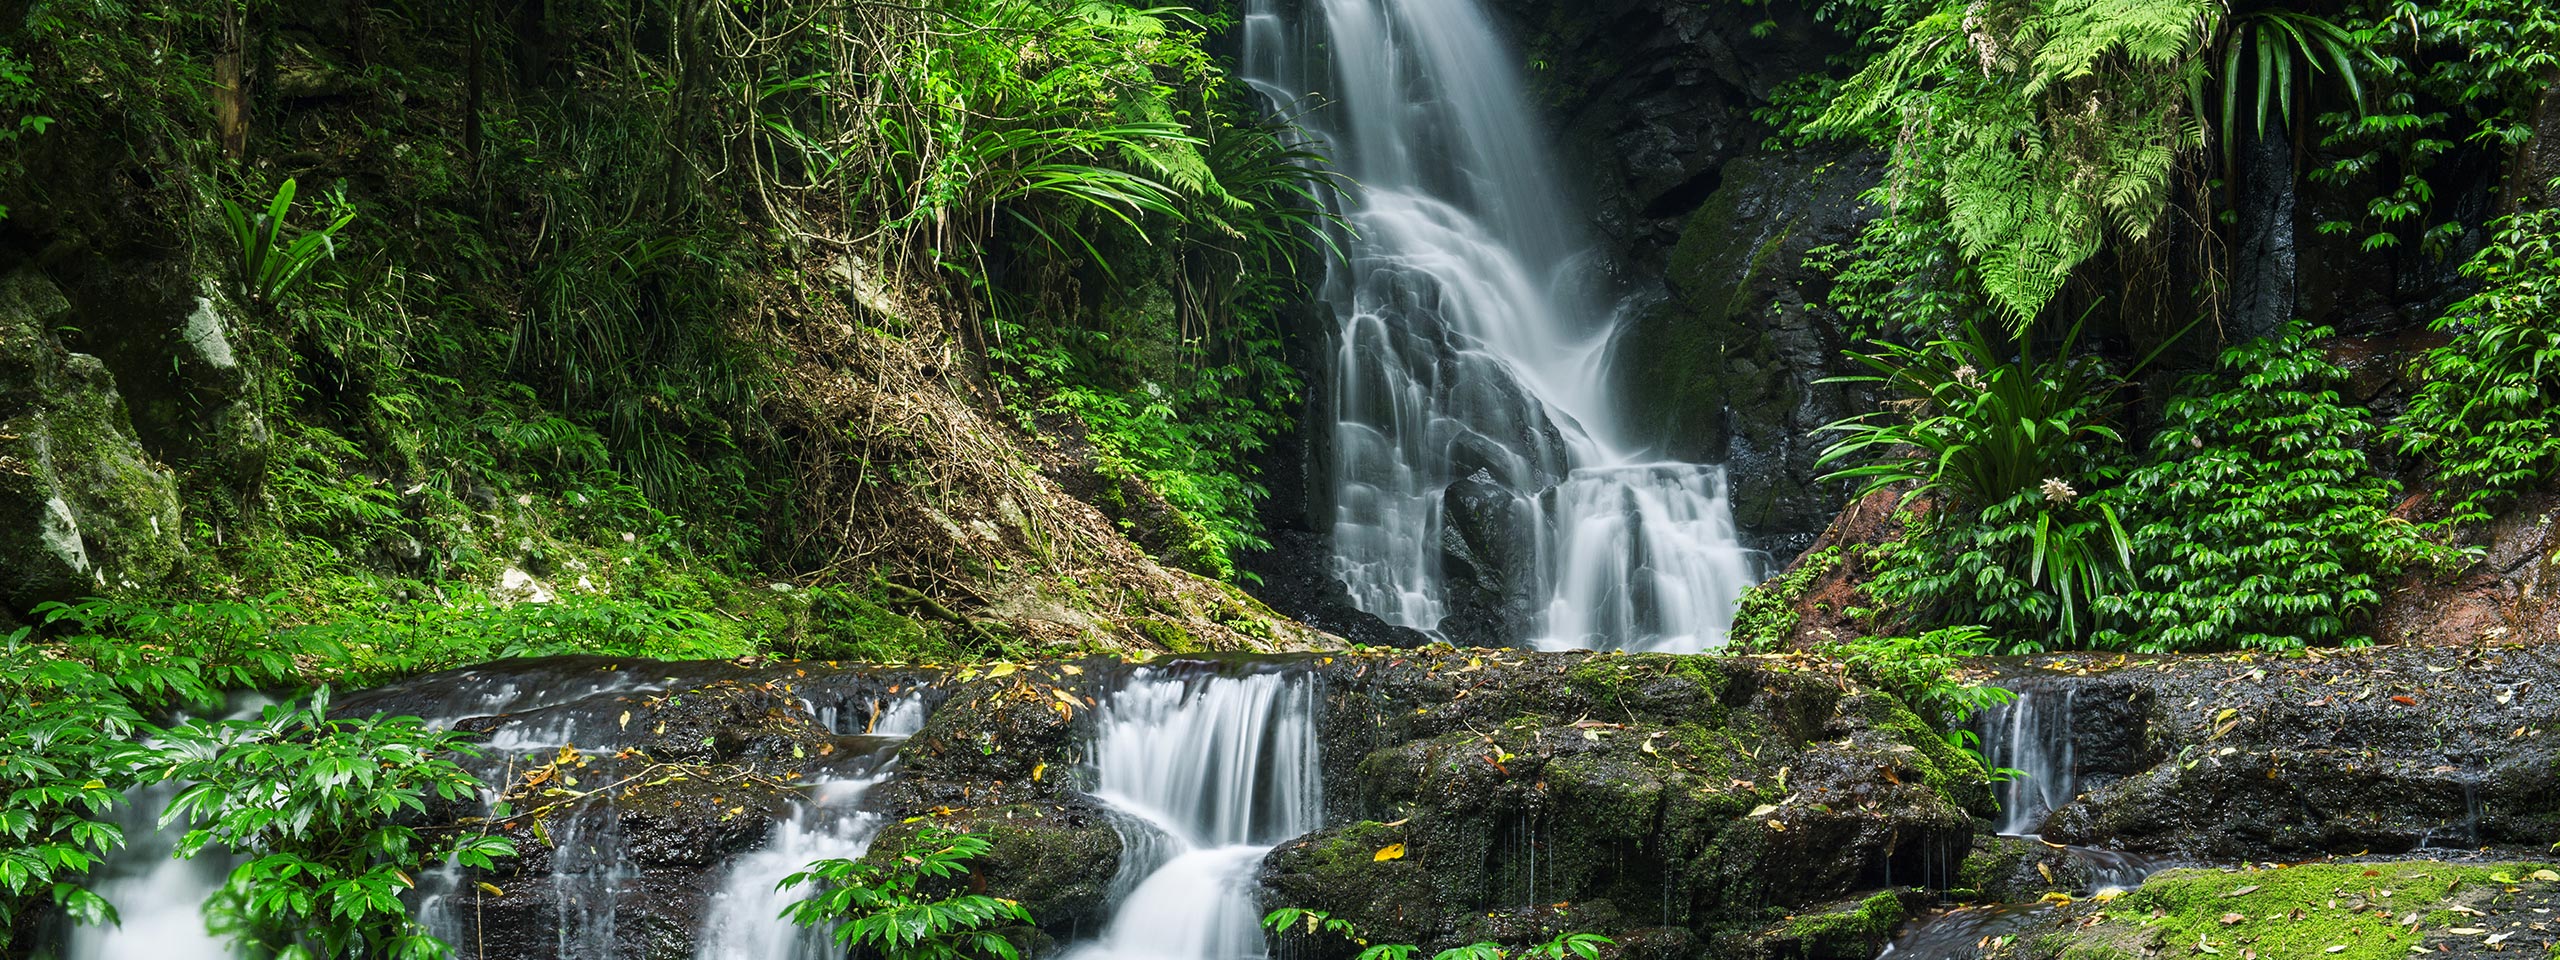 Waterfall at Lamington National Park